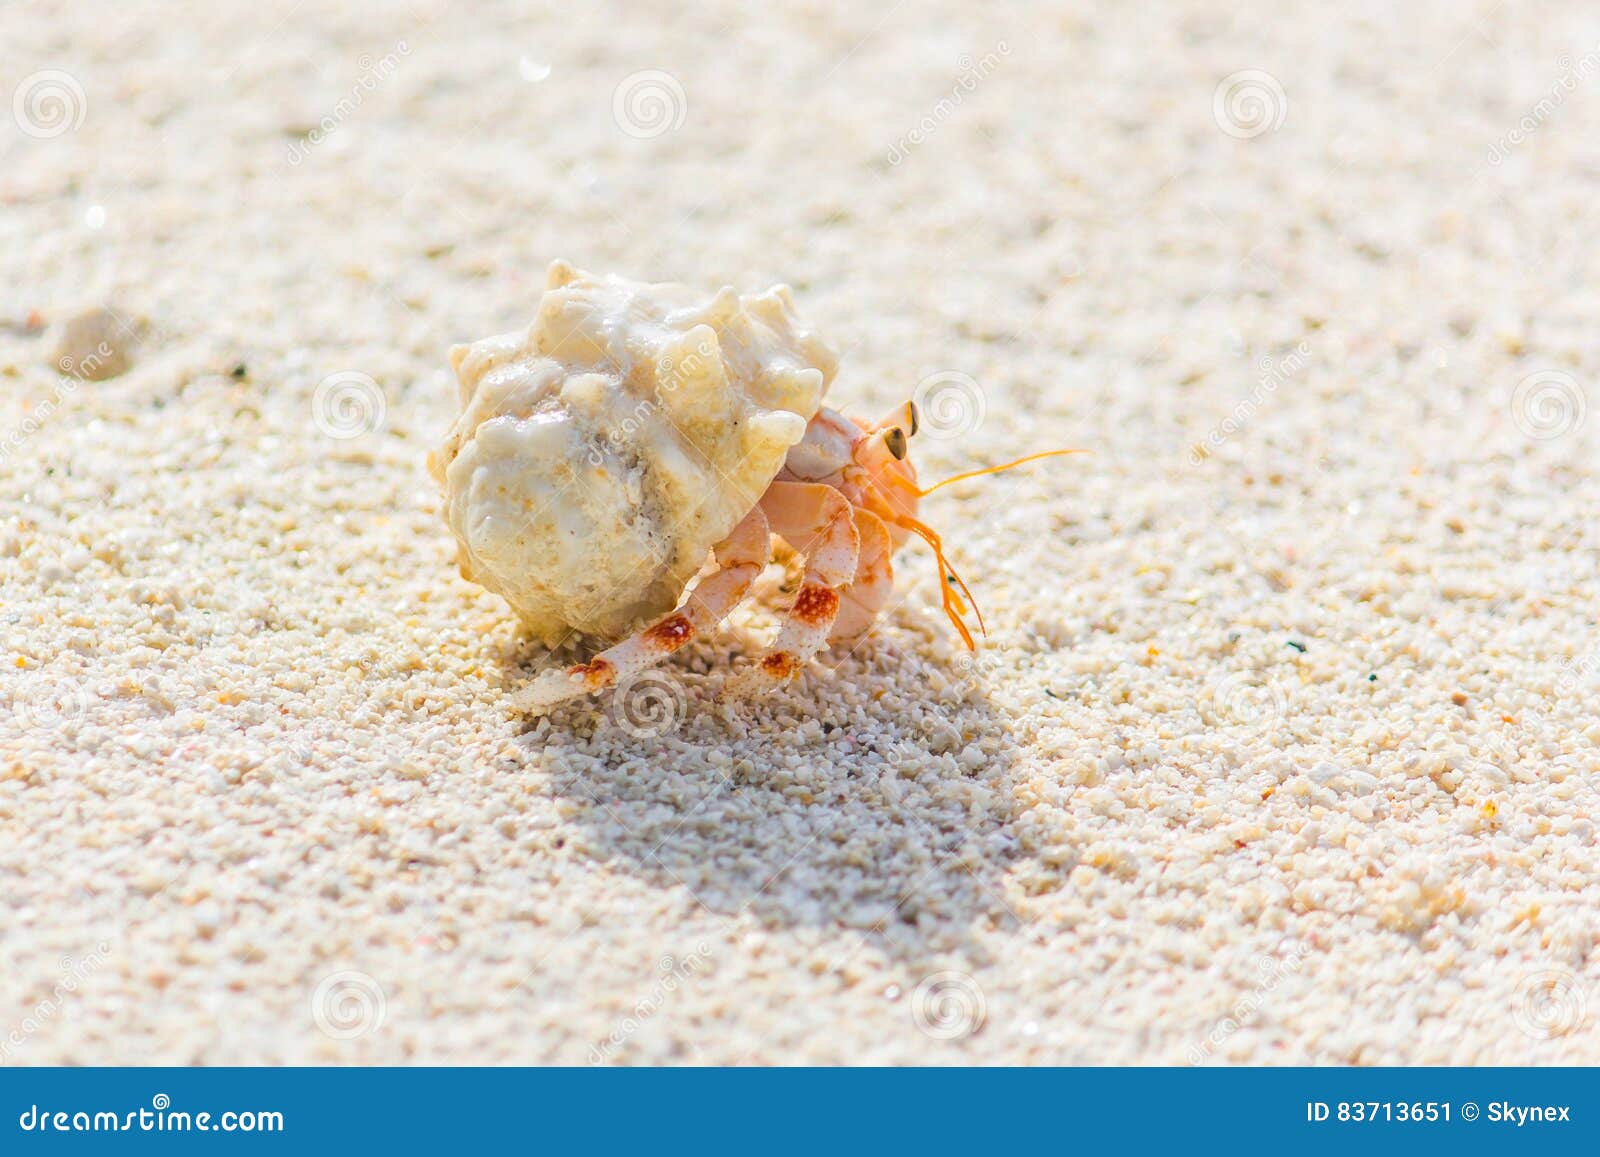 大闸蟹和梭子蟹有什么区别_大闸蟹和梭子蟹哪个好吃-排行榜